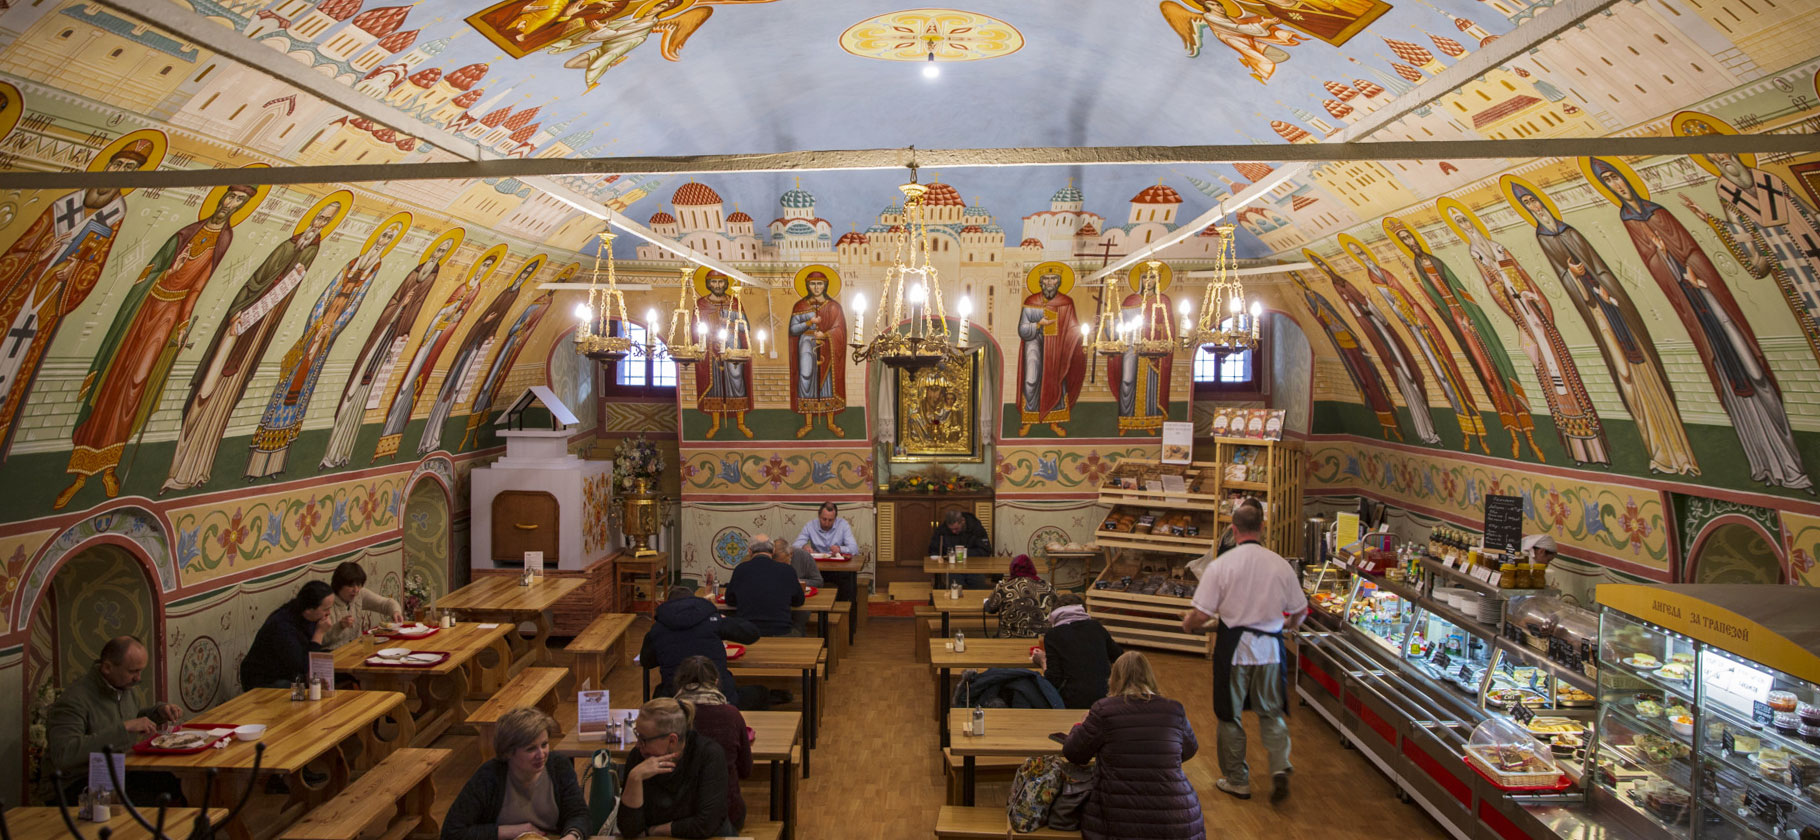 9 необычных кафе и баров Москвы: трапезная в монастыре и кофейня с гаданиями